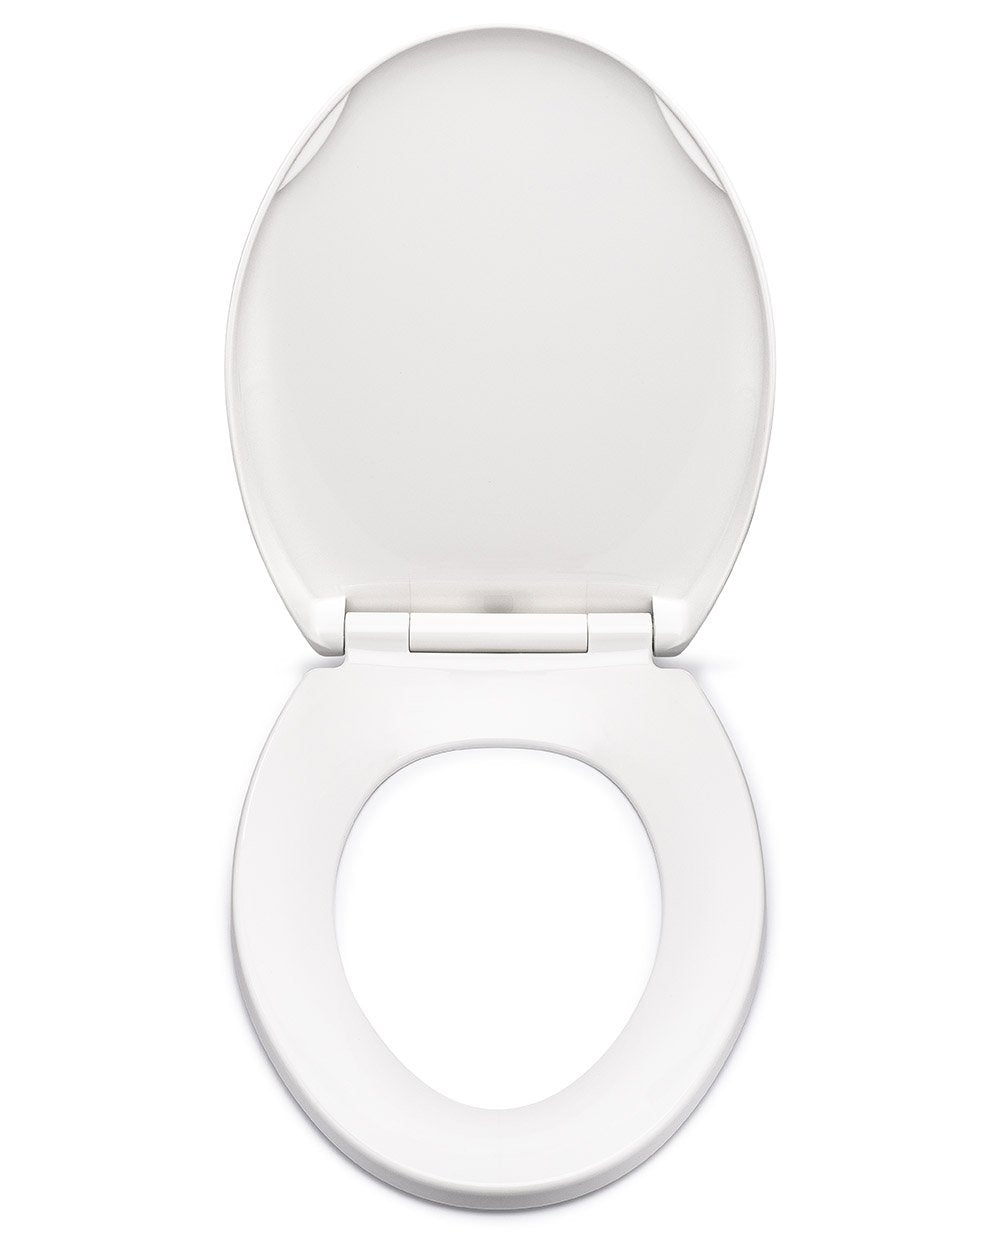 Royal Plaza Timothy Siège toilette avec amortisseur et déclipsable blanc -  45221 